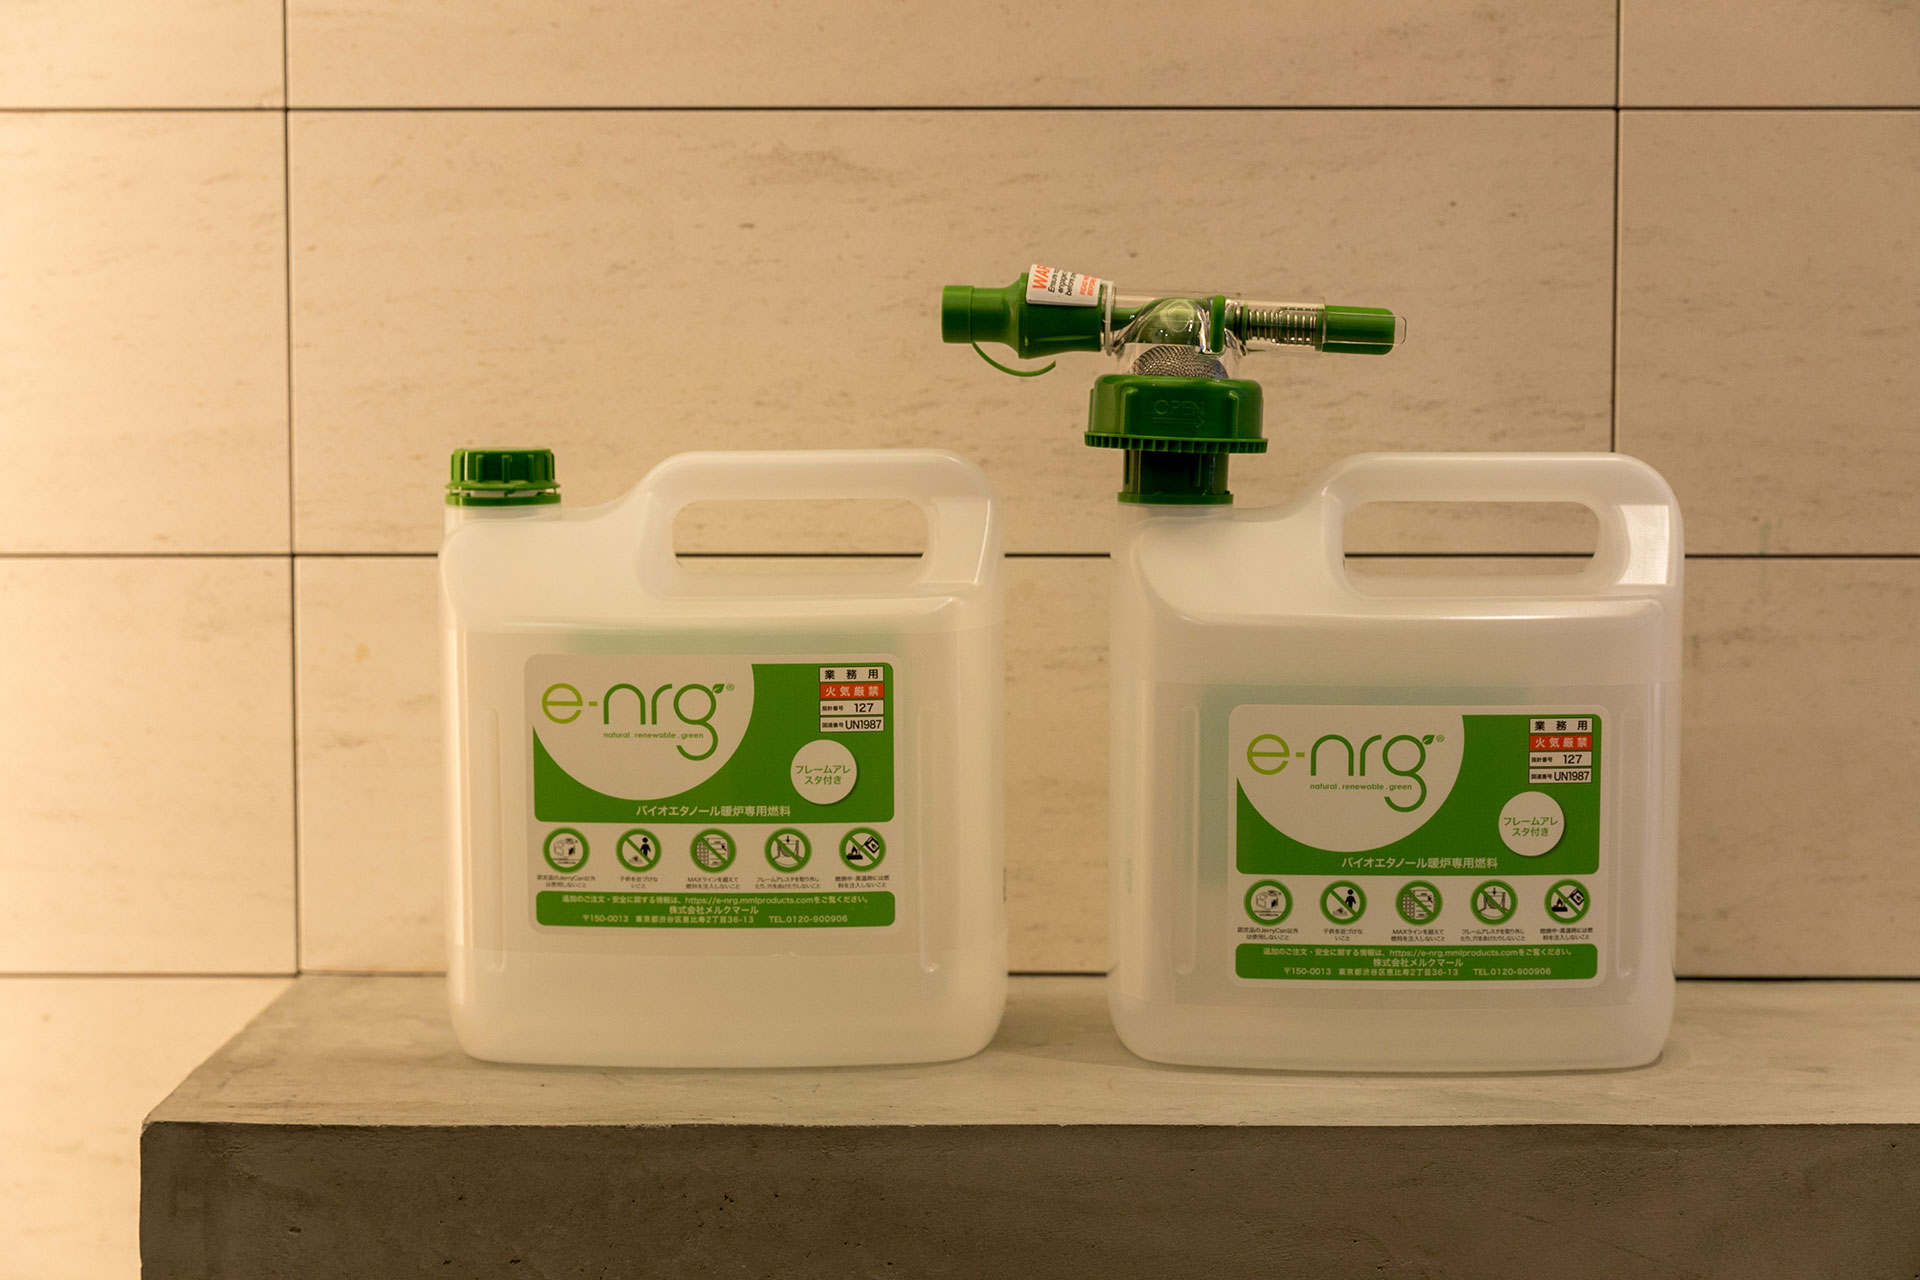 『EcoSmart Fire』の公式燃料「e-NRG」。美しい炎と長い燃焼時間、燃焼効率を誇る、サトウキビから作られた発酵バイオエタノール燃料だ。特別なノズルで簡単・安全にボトルから燃料を注ぐことができる。